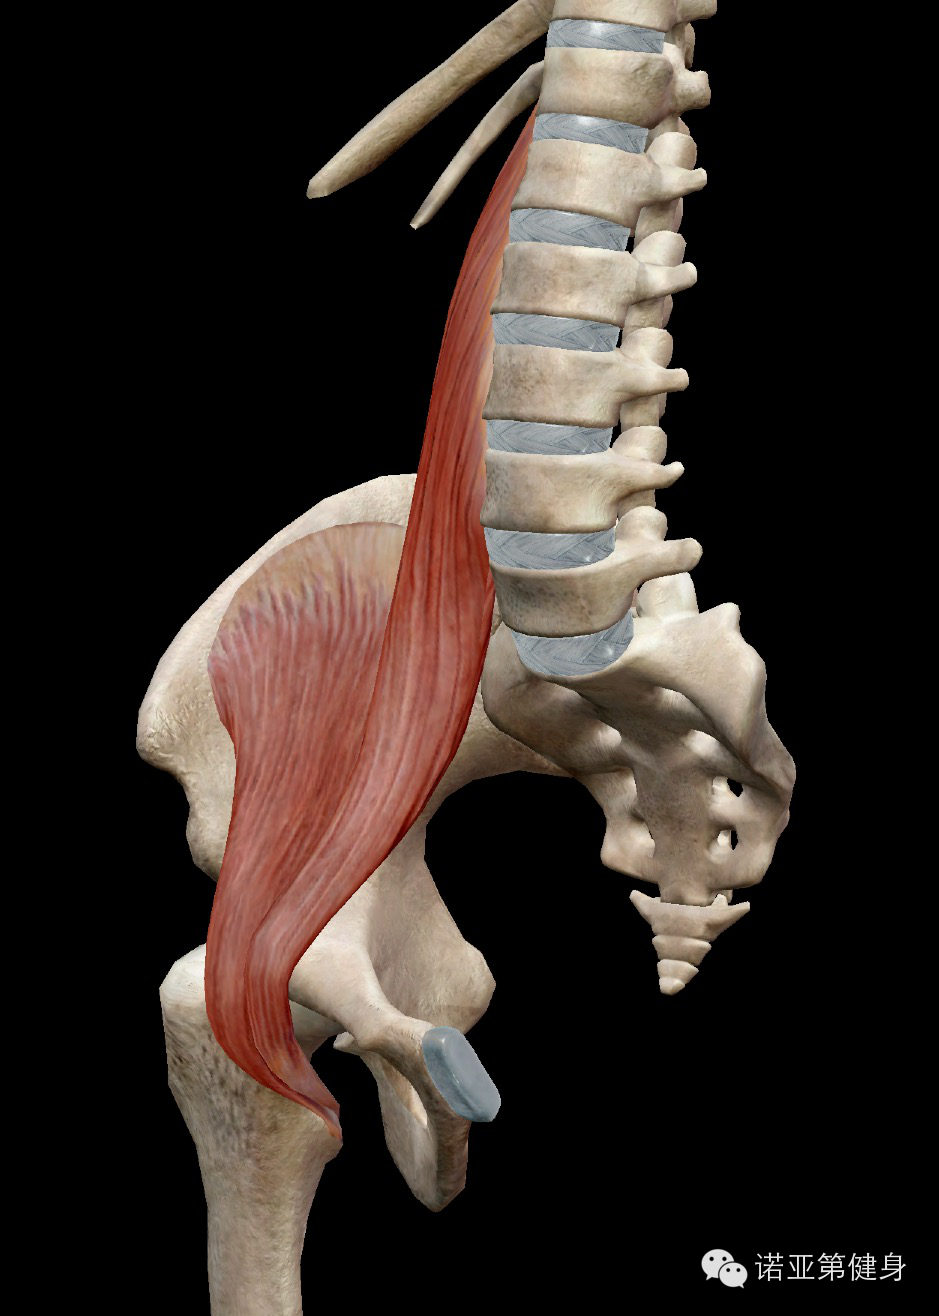 腰大肌在髂窝与髂肌相连形成髂腰肌,是人体最重要的骨骼肌之一,不仅